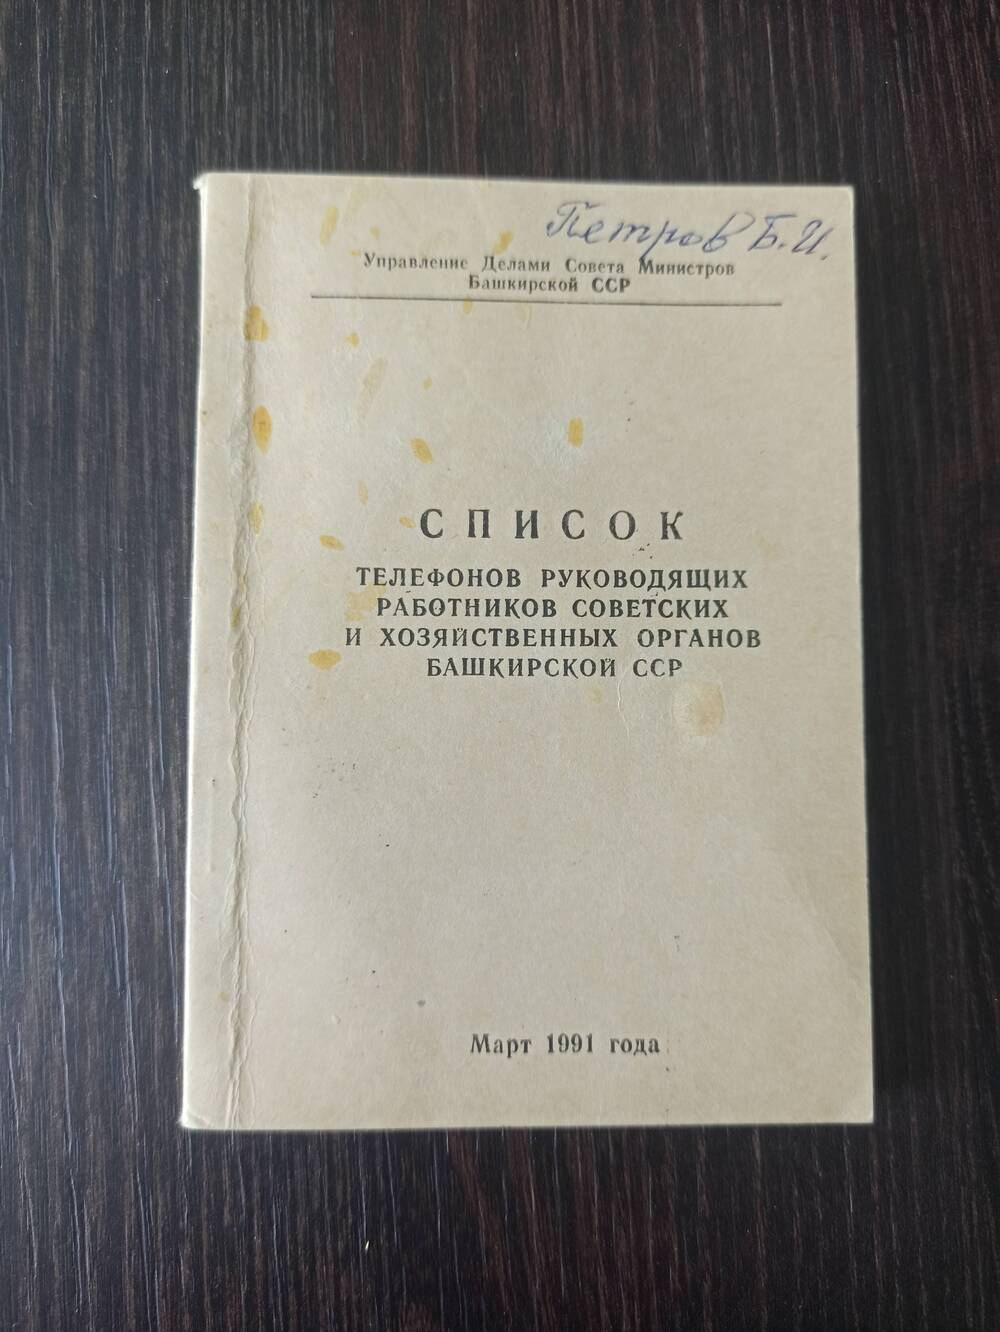 Список телефонов руководящих работников советских и хозяйственных органов БАССР